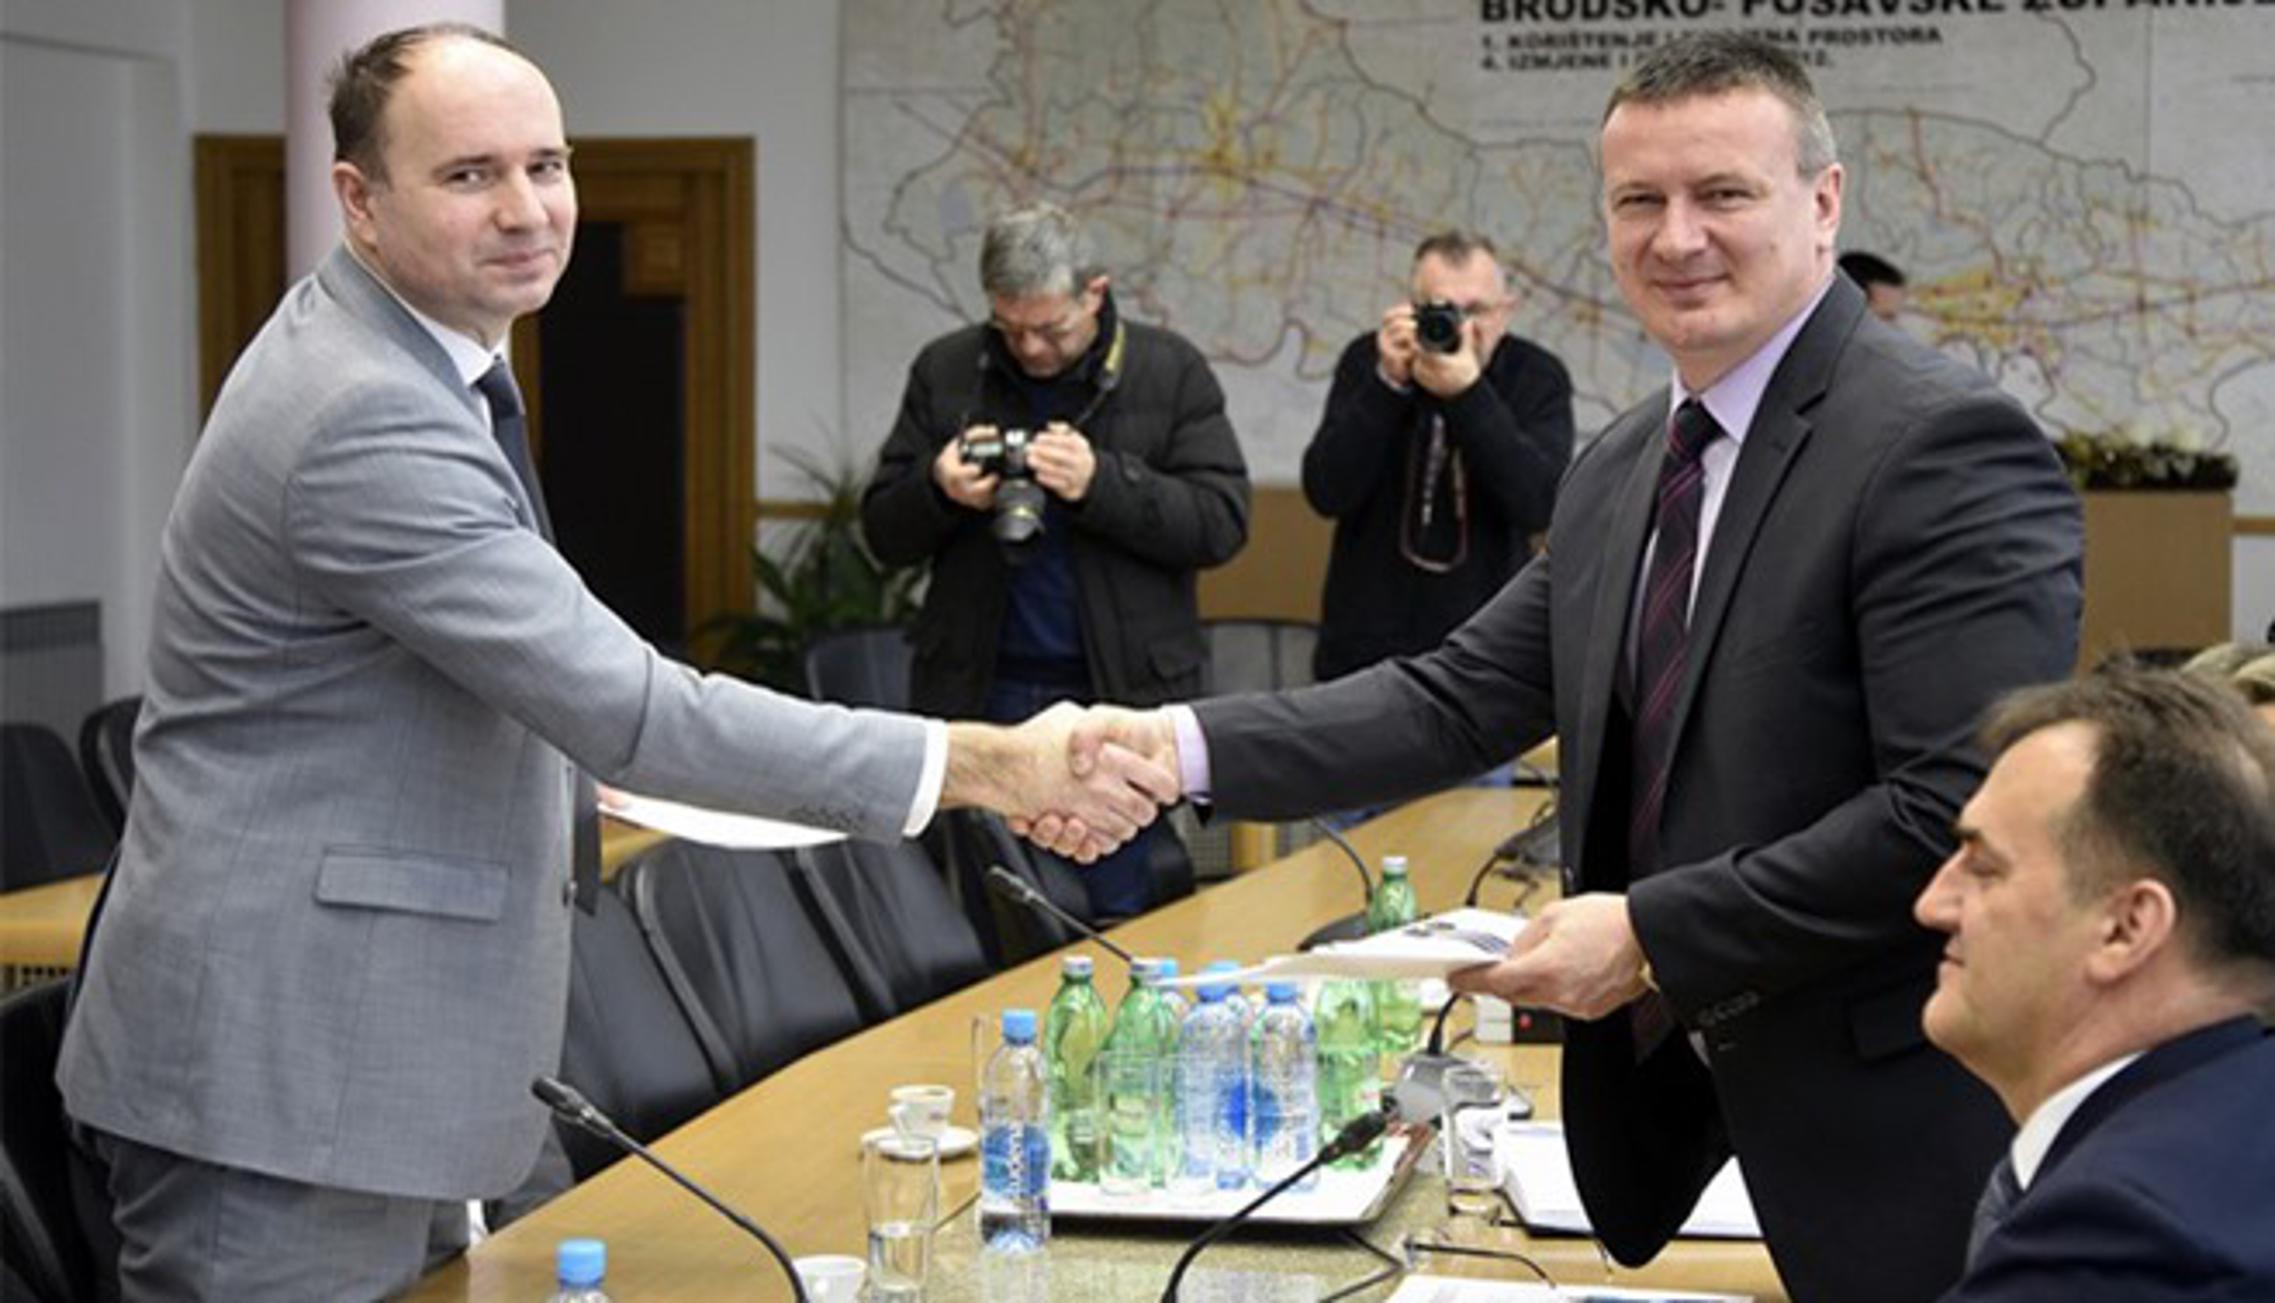 Ugovor o sufinaciranju potpisali su župan Danijel Marušić i Ivica Sarić